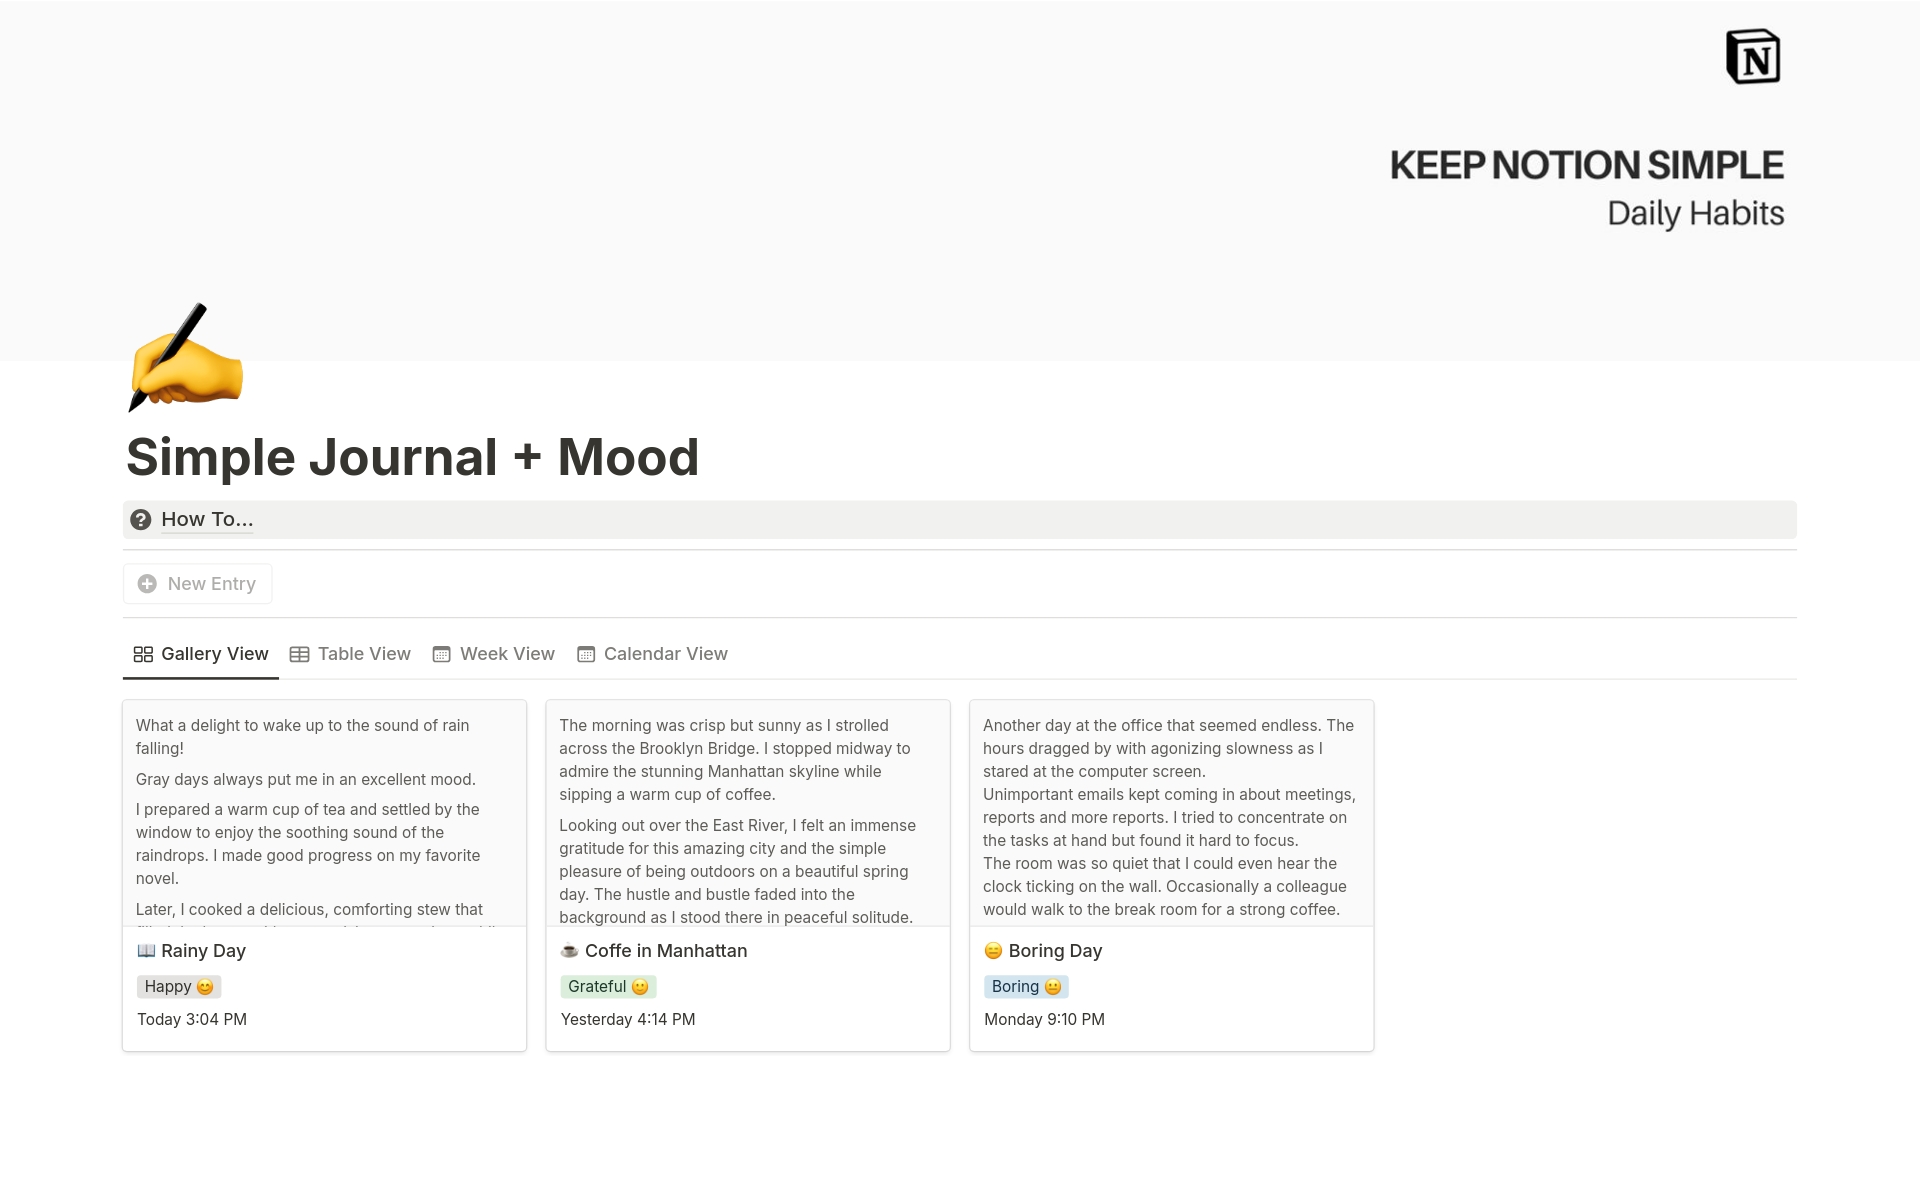 Vista previa de una plantilla para KNS Journal + Mood